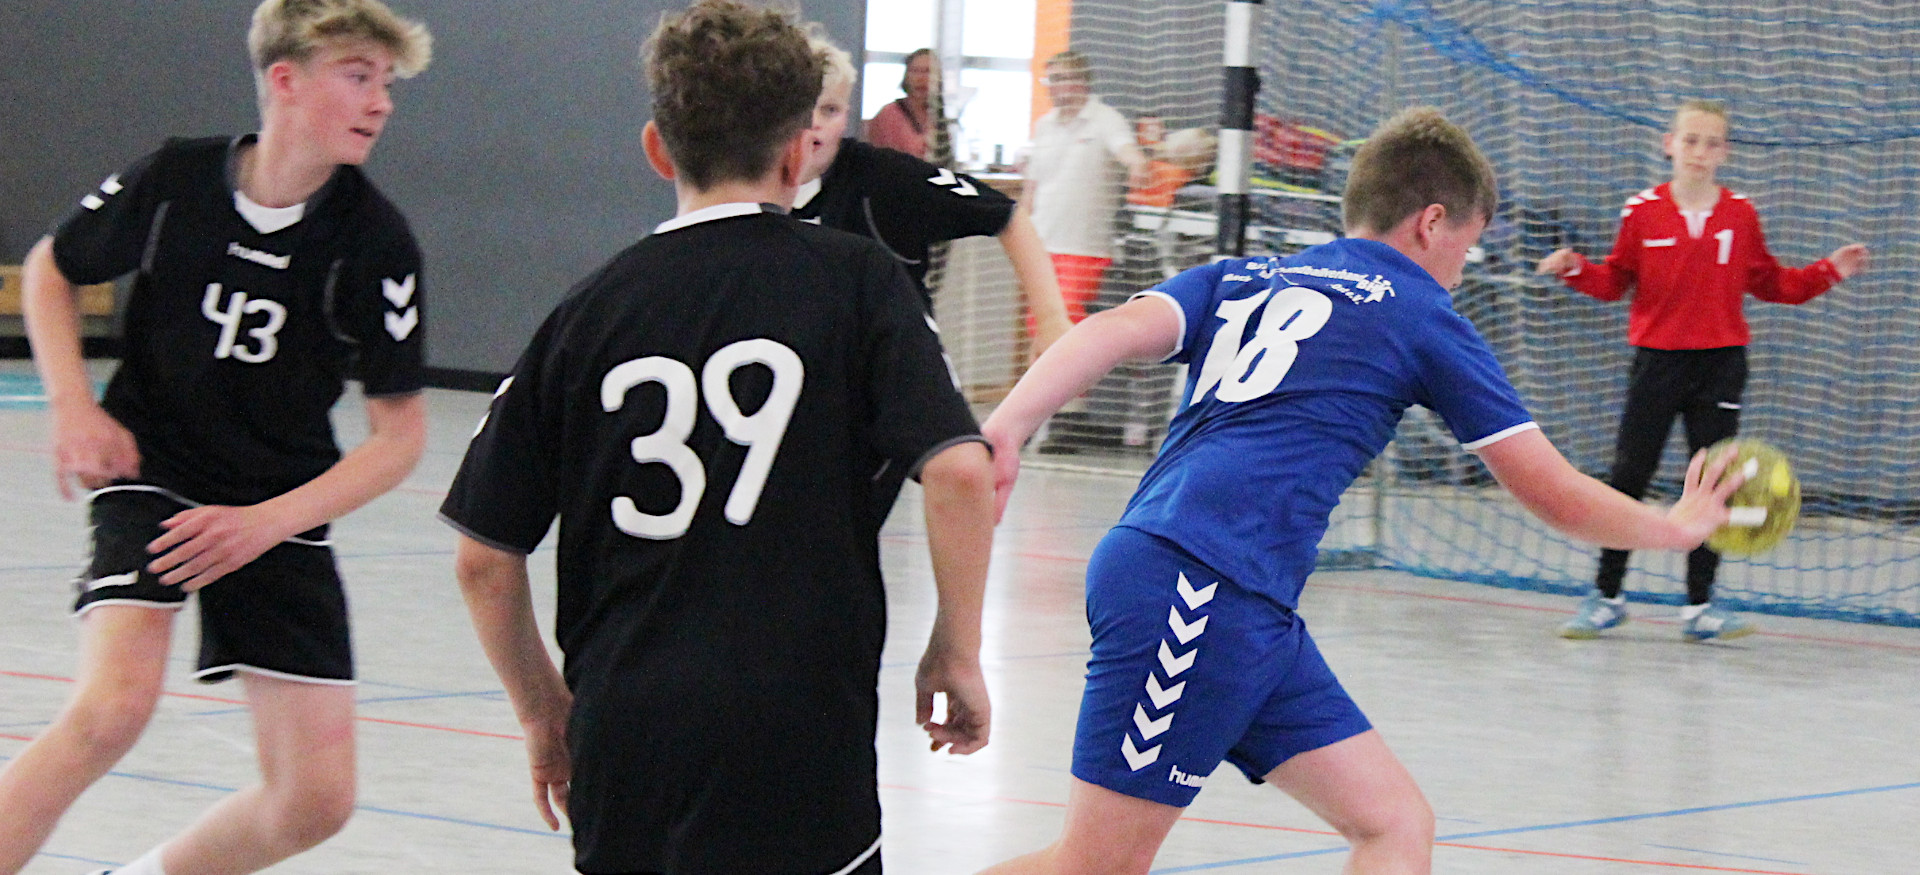 Handball ©LSB MV